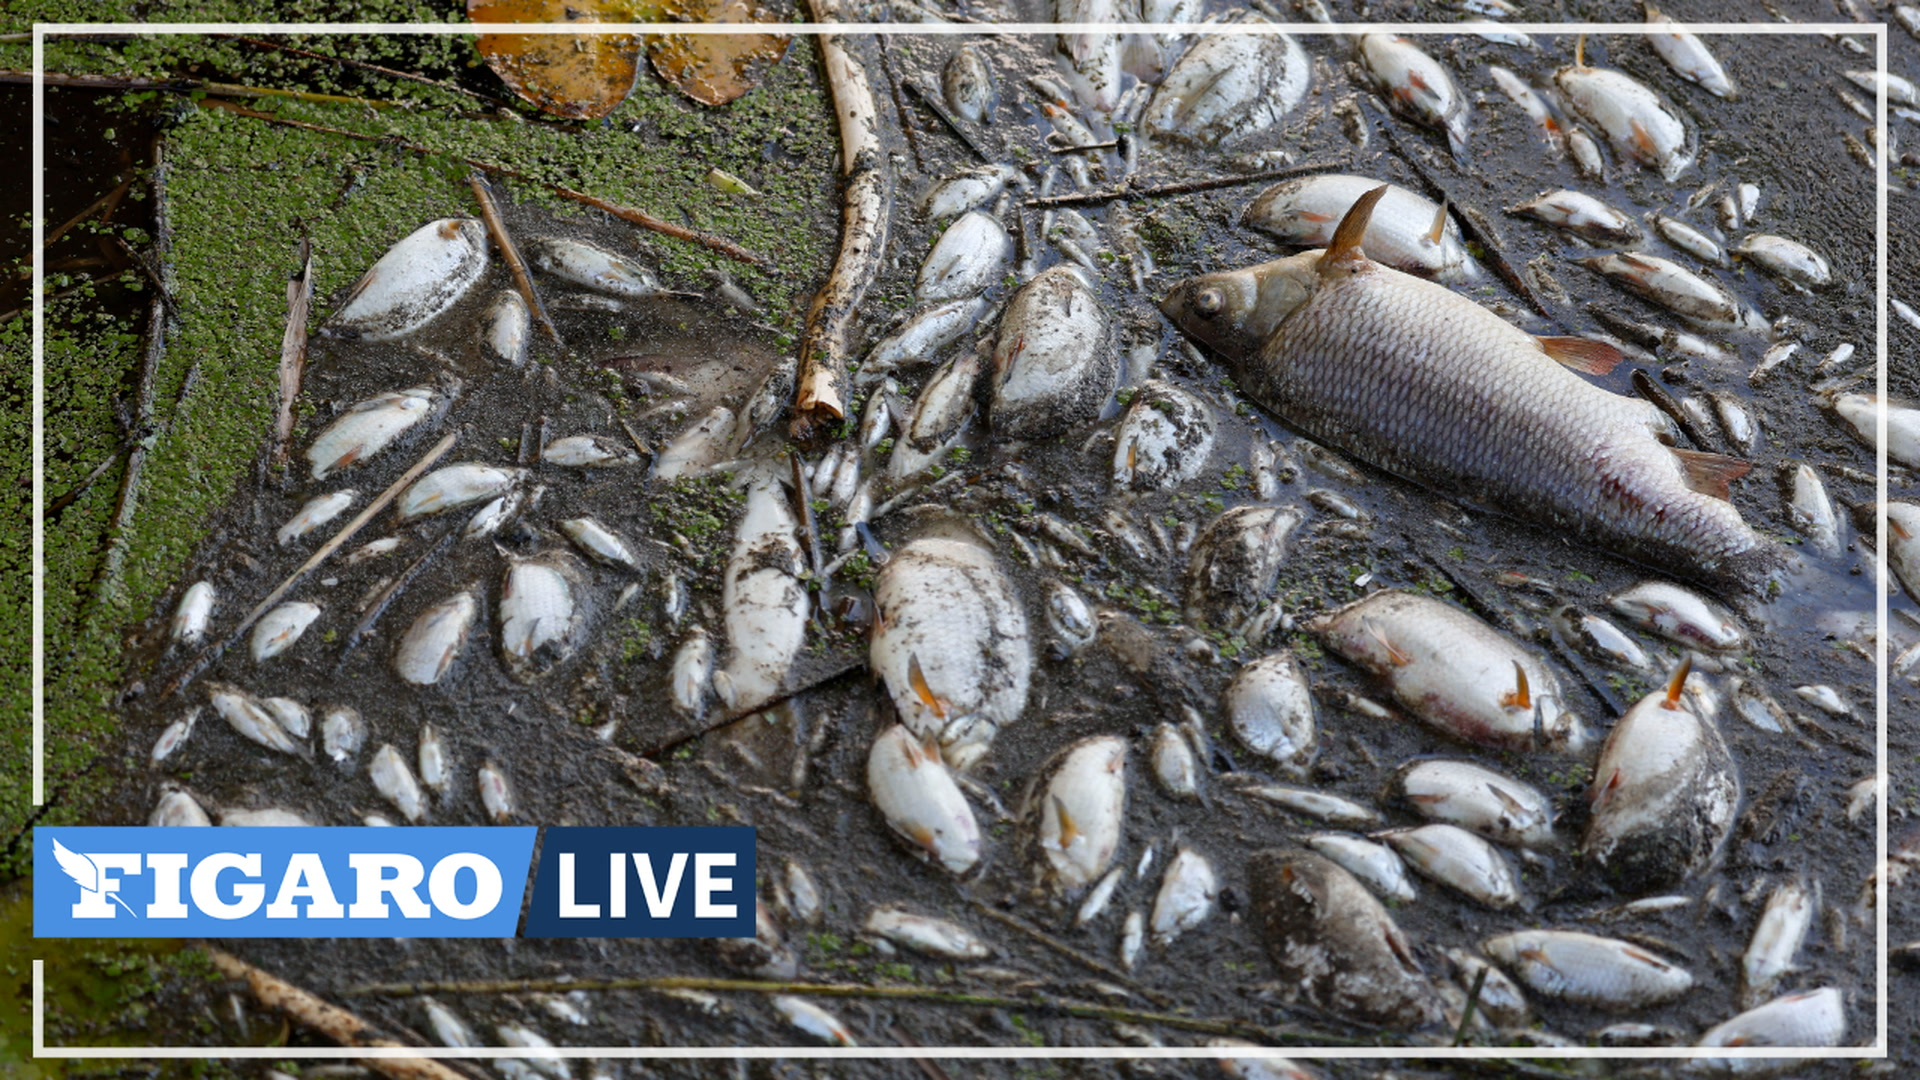 Des milliers de poissons morts dans l'Oder font craindre un désastre environnemental en Allemagne et en Pologne